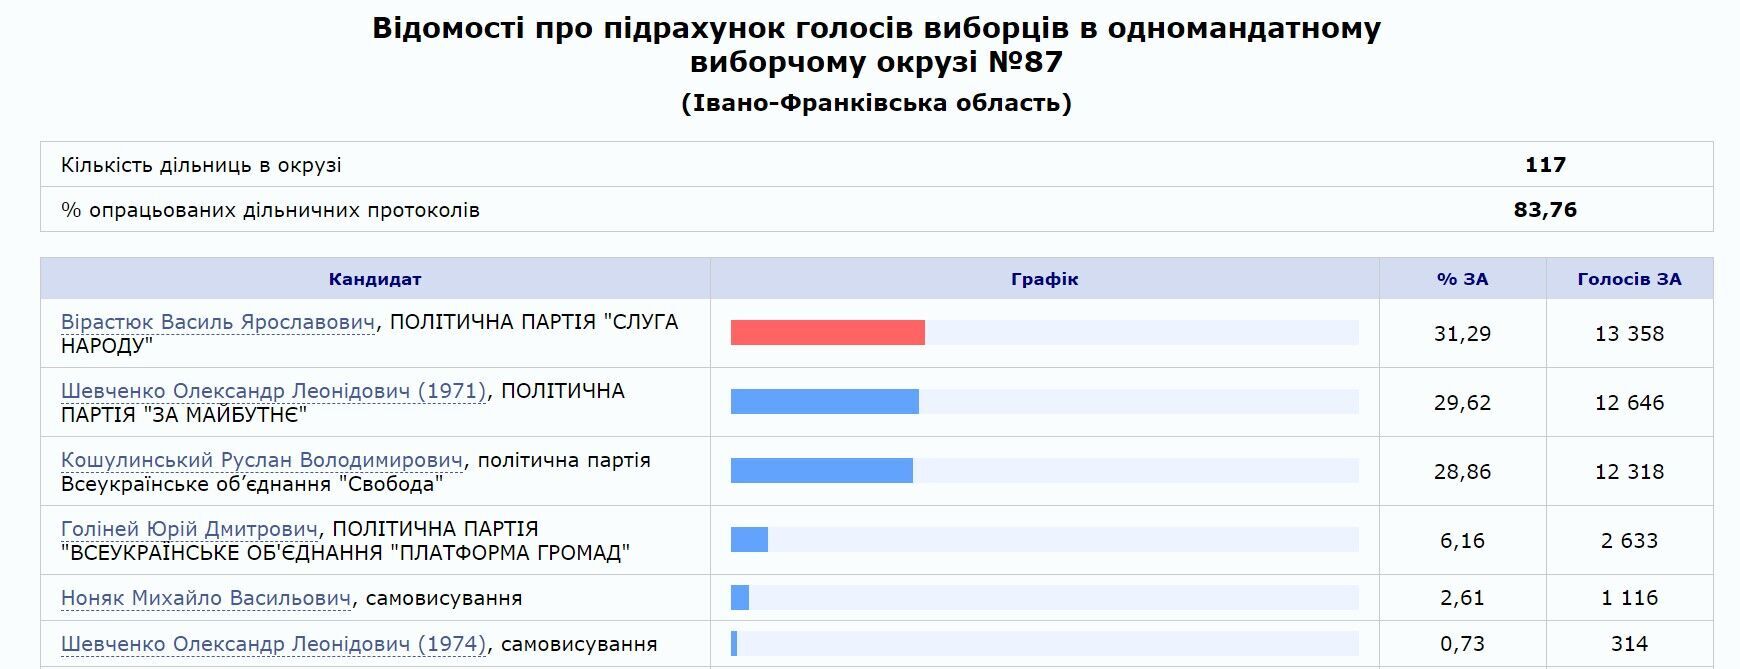 На Прикарпатті під наглядом силовиків змогли продовжити підрахунок голосів: дані ЦВК